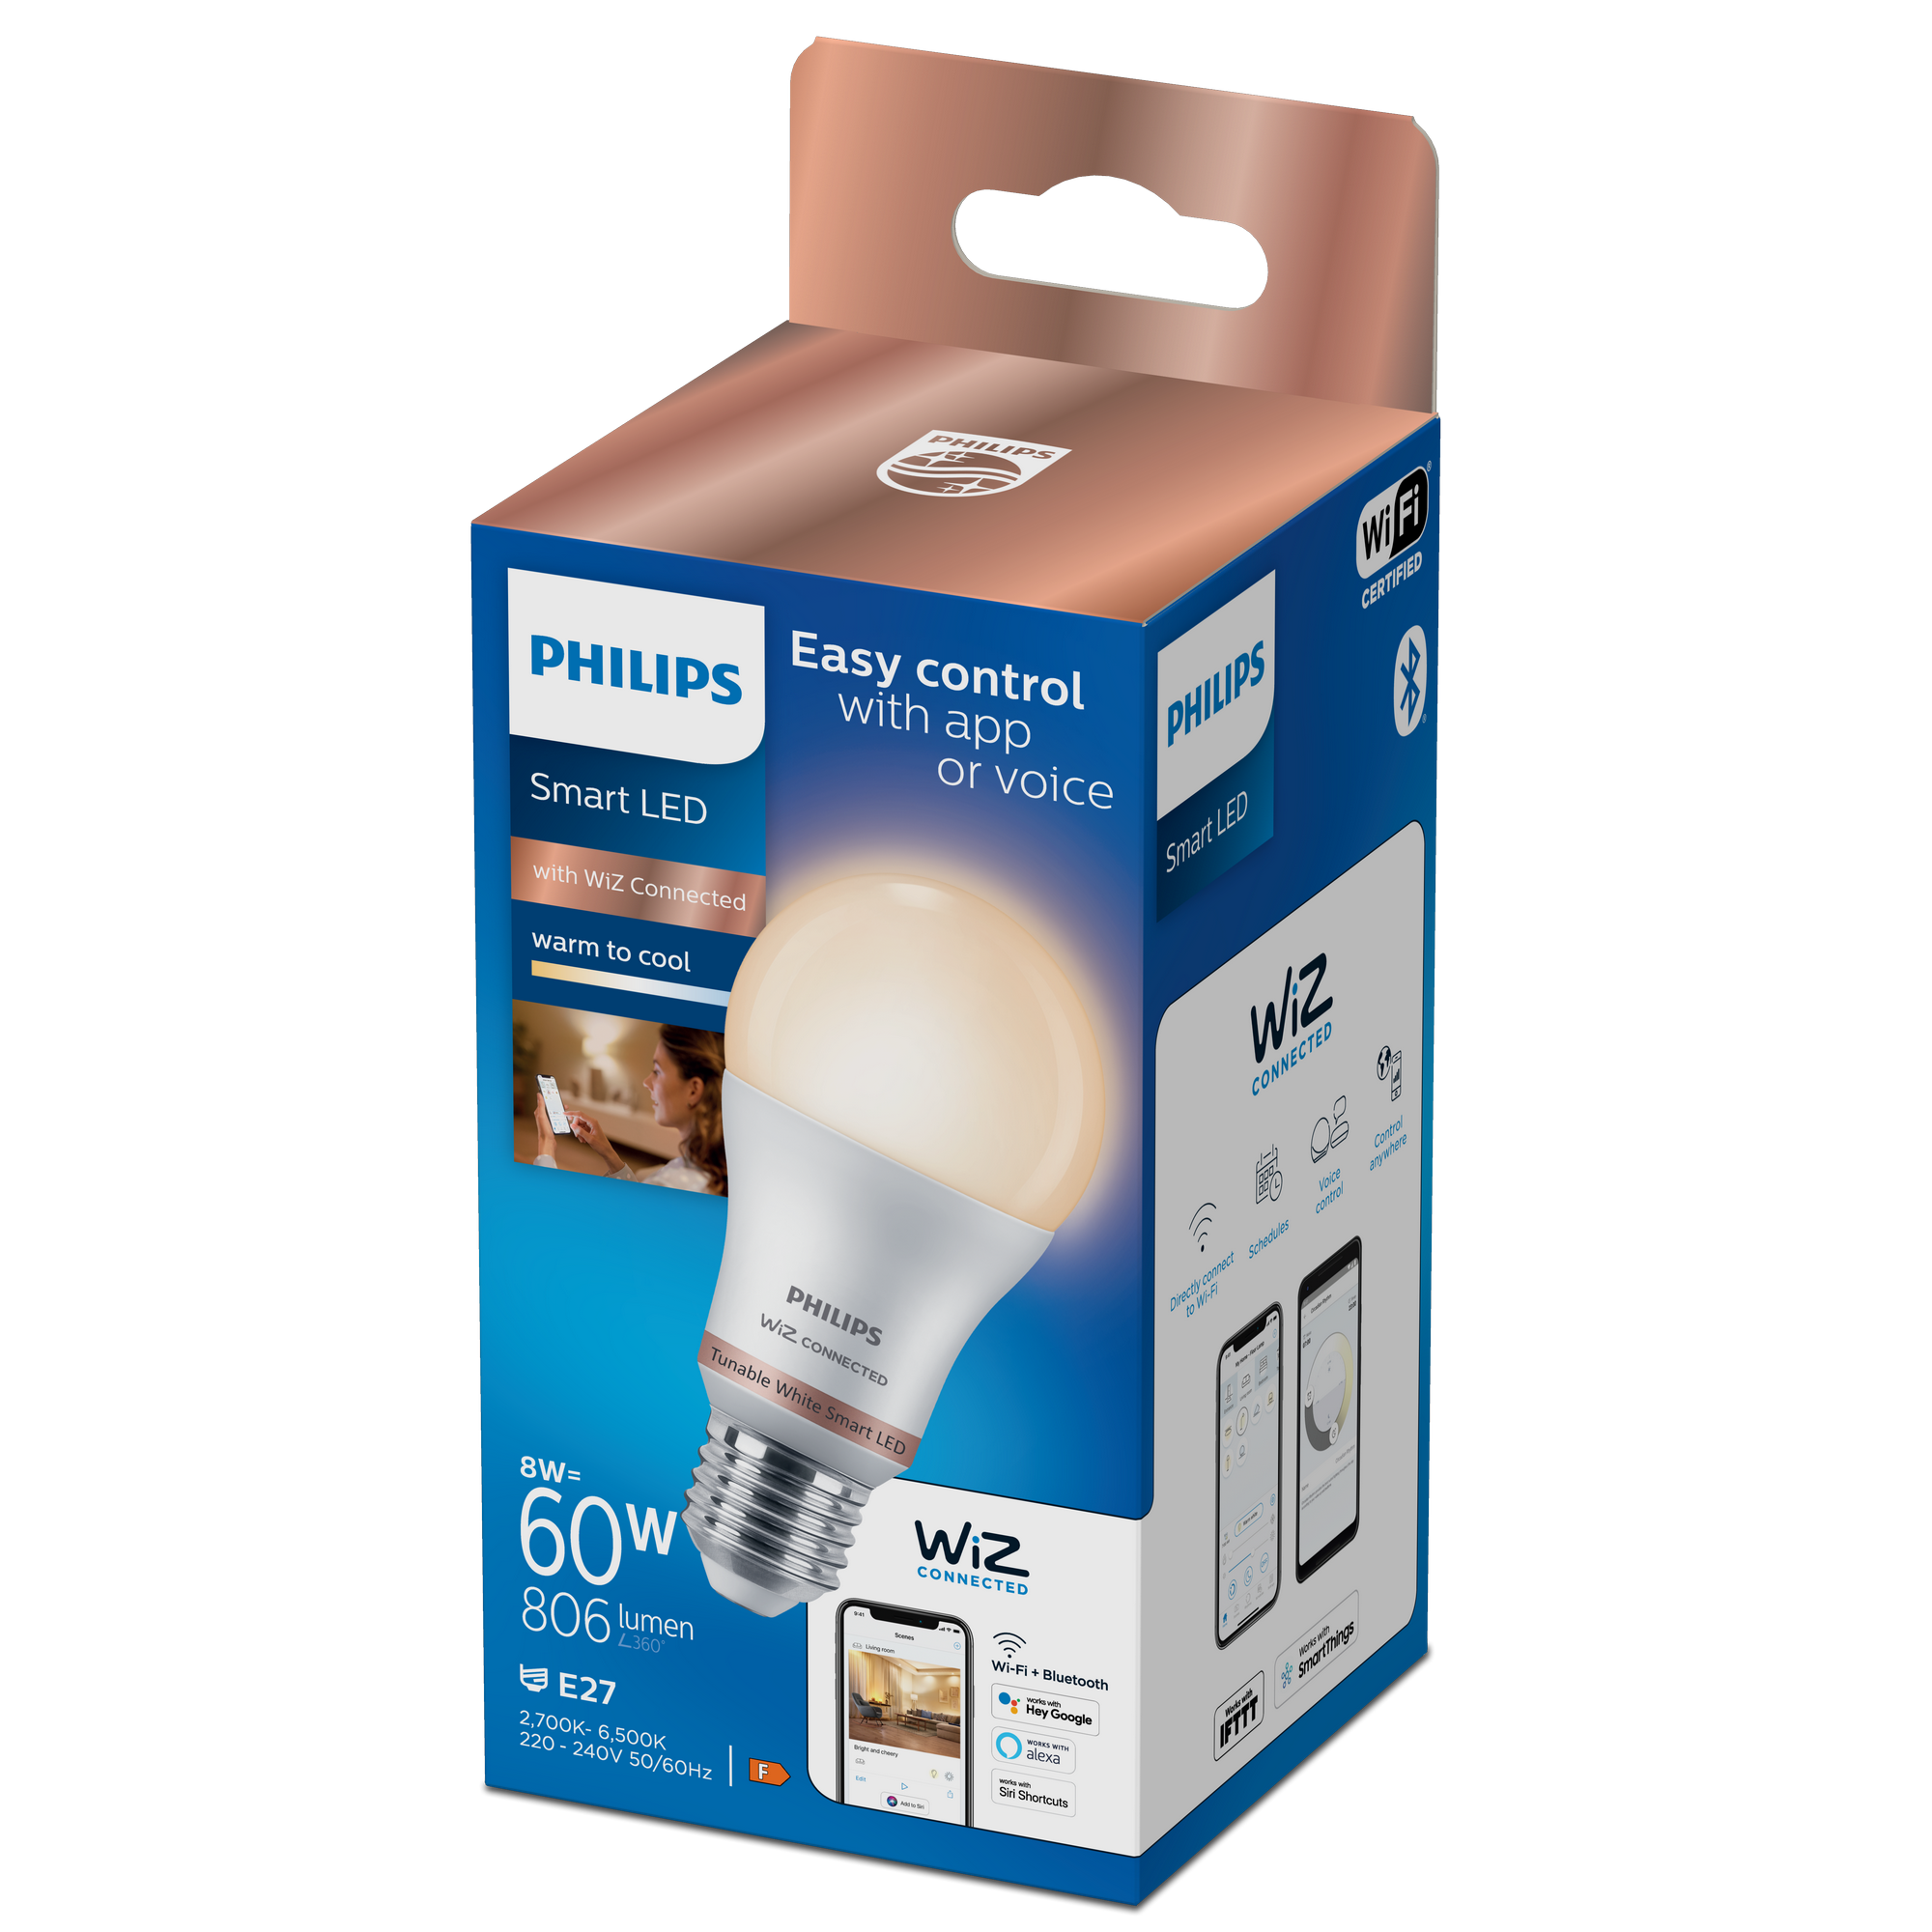 LED-Lampe 'SmartLED' 806 lm E27 Glühlampe weiß 2700-6500 K 8 W